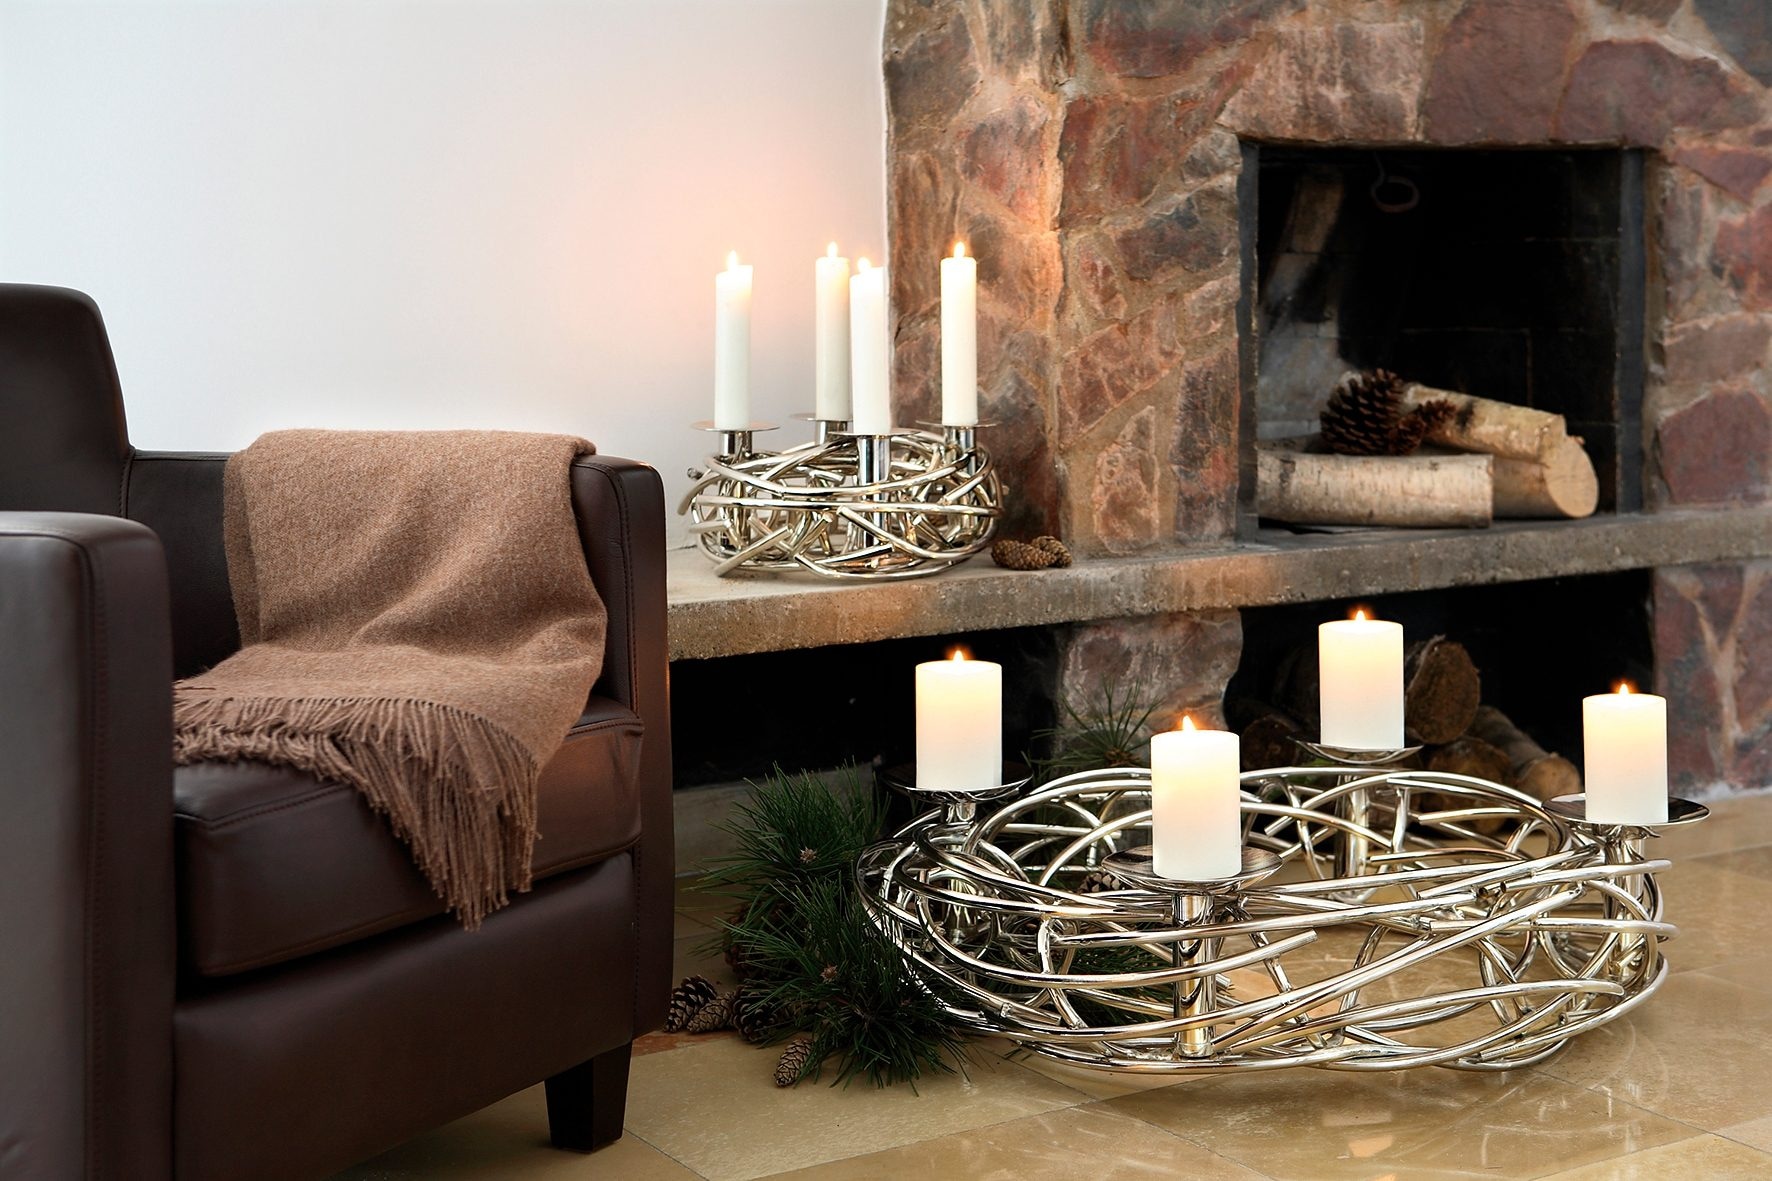 Fink Kerzenständer »Dekokranz CORONA, Ø ca. 40 cm, Adventsleuchter, Weihnachtsdeko«, Adventskranz, für Stumpenkerzen, Kerzenteller demontierbar